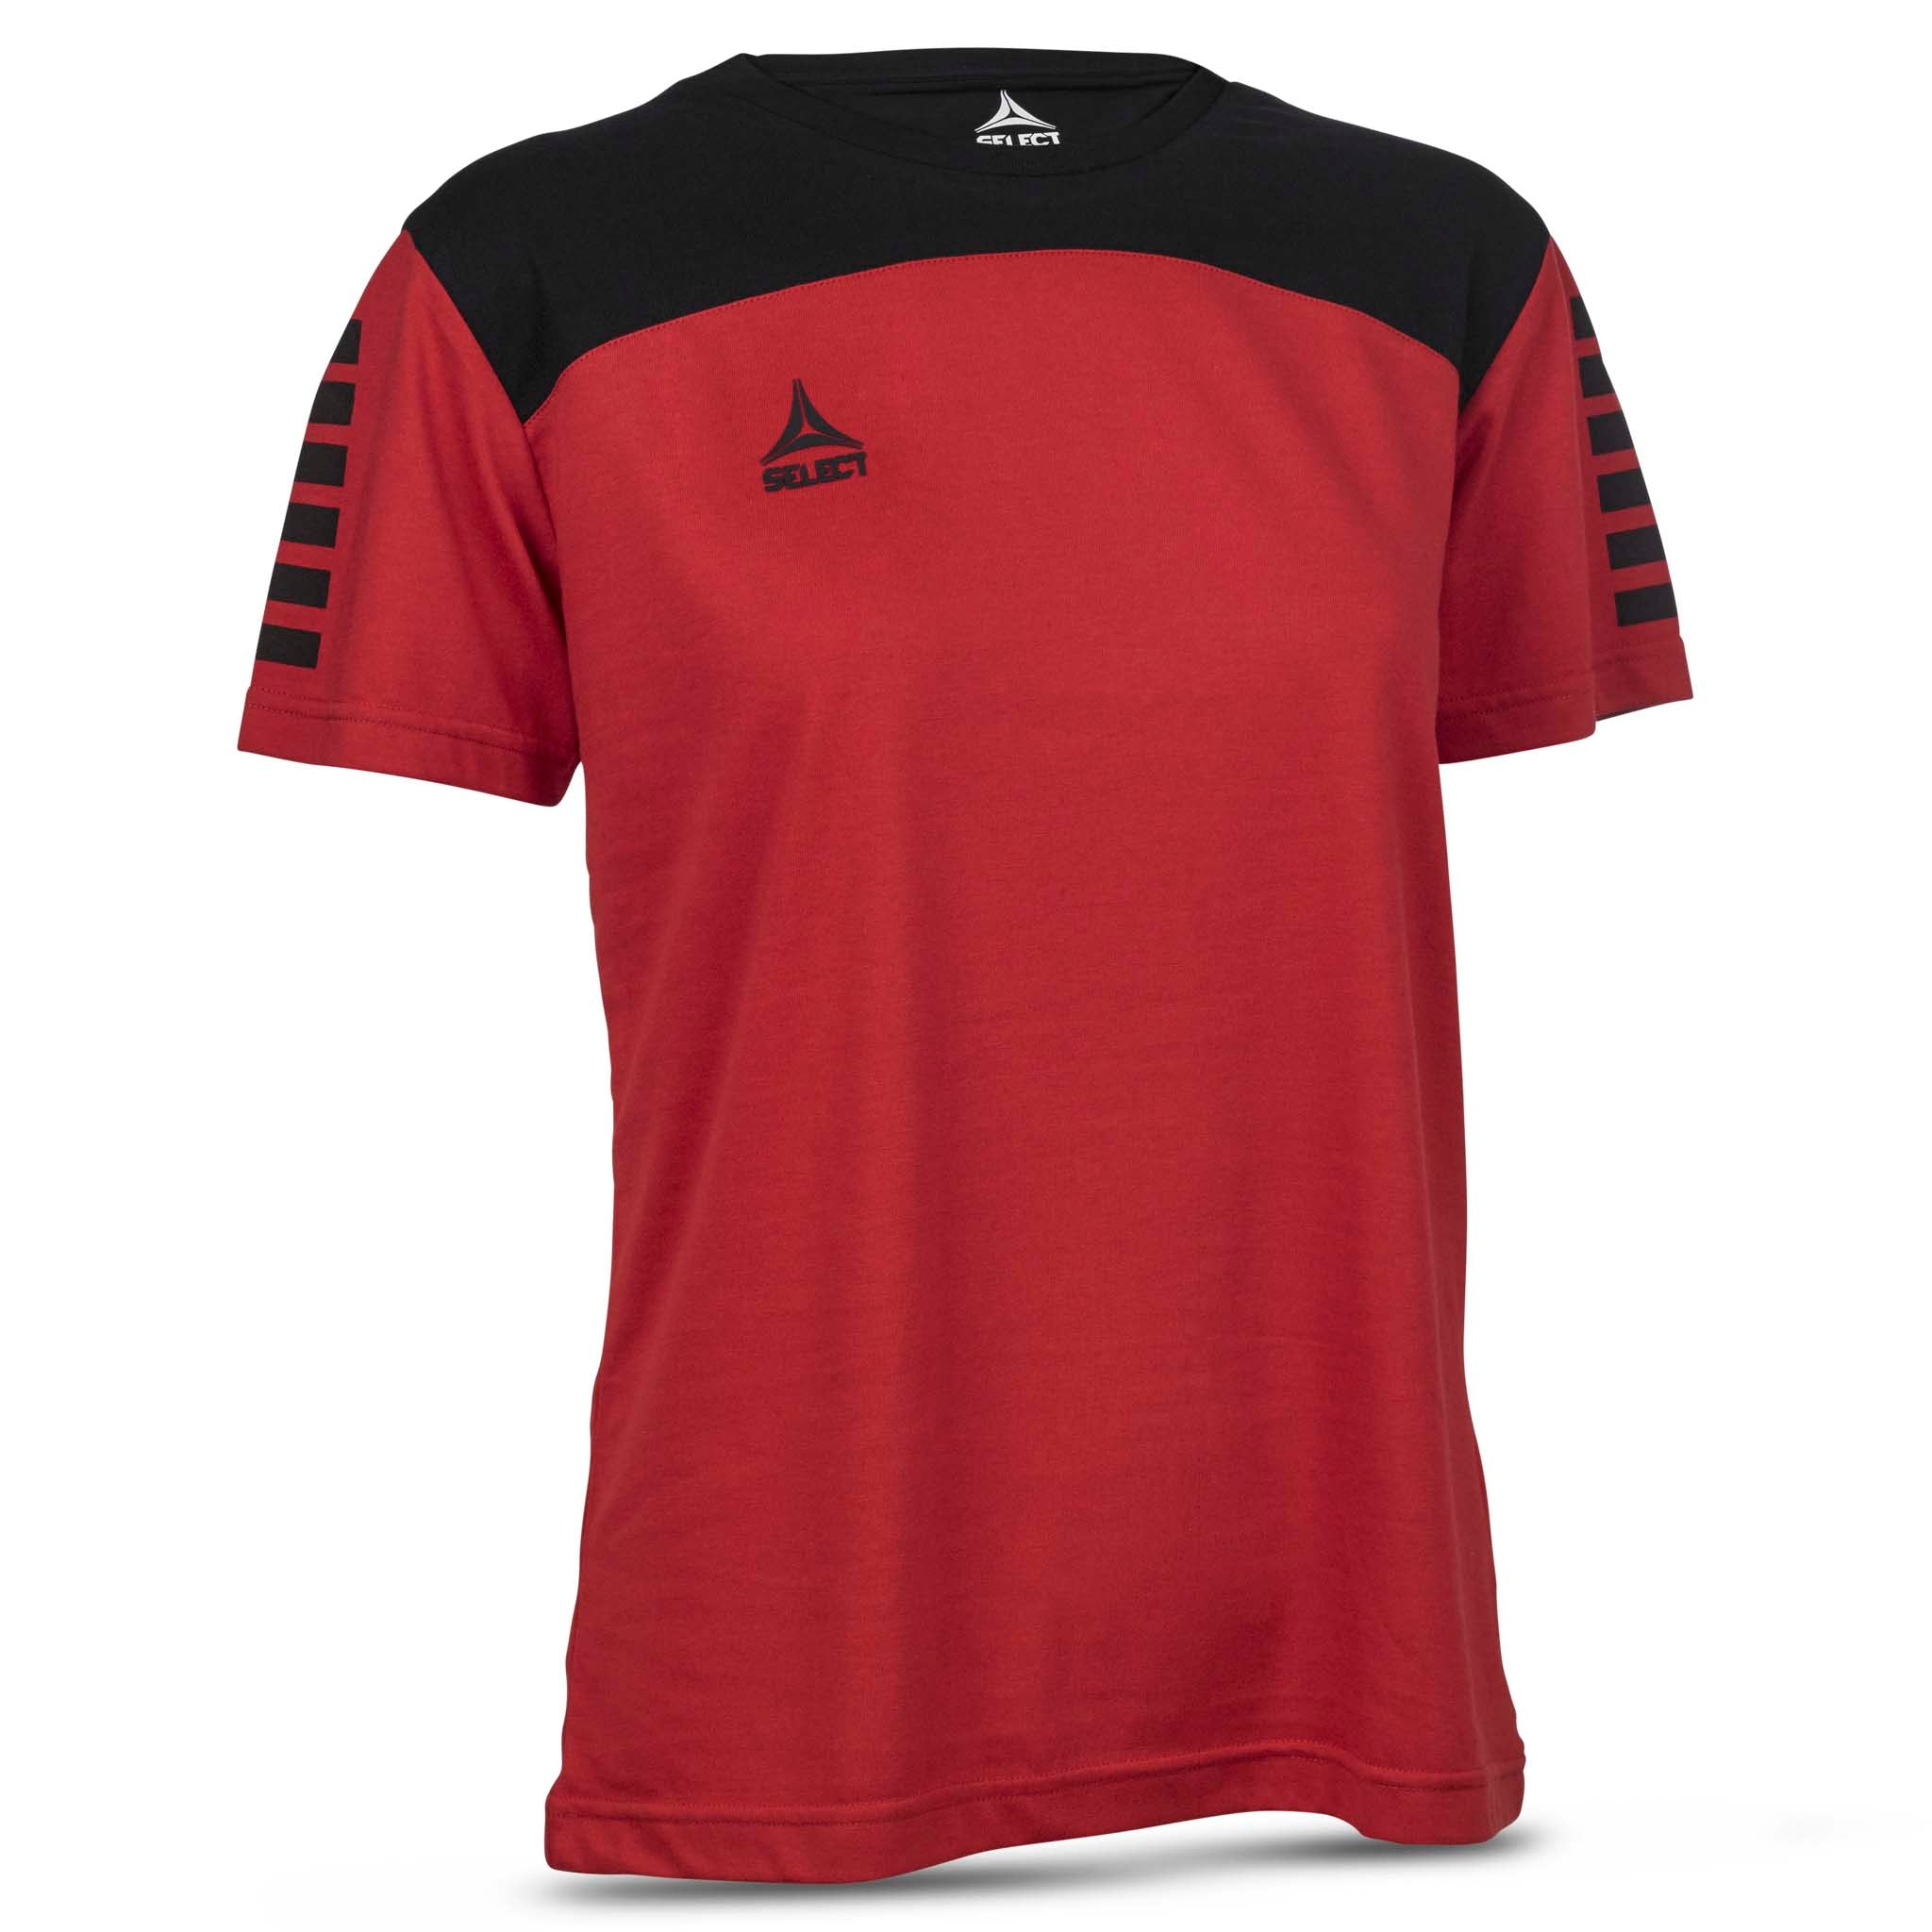 Oxford T-Shirt - Kvinner #farge_rød/svart